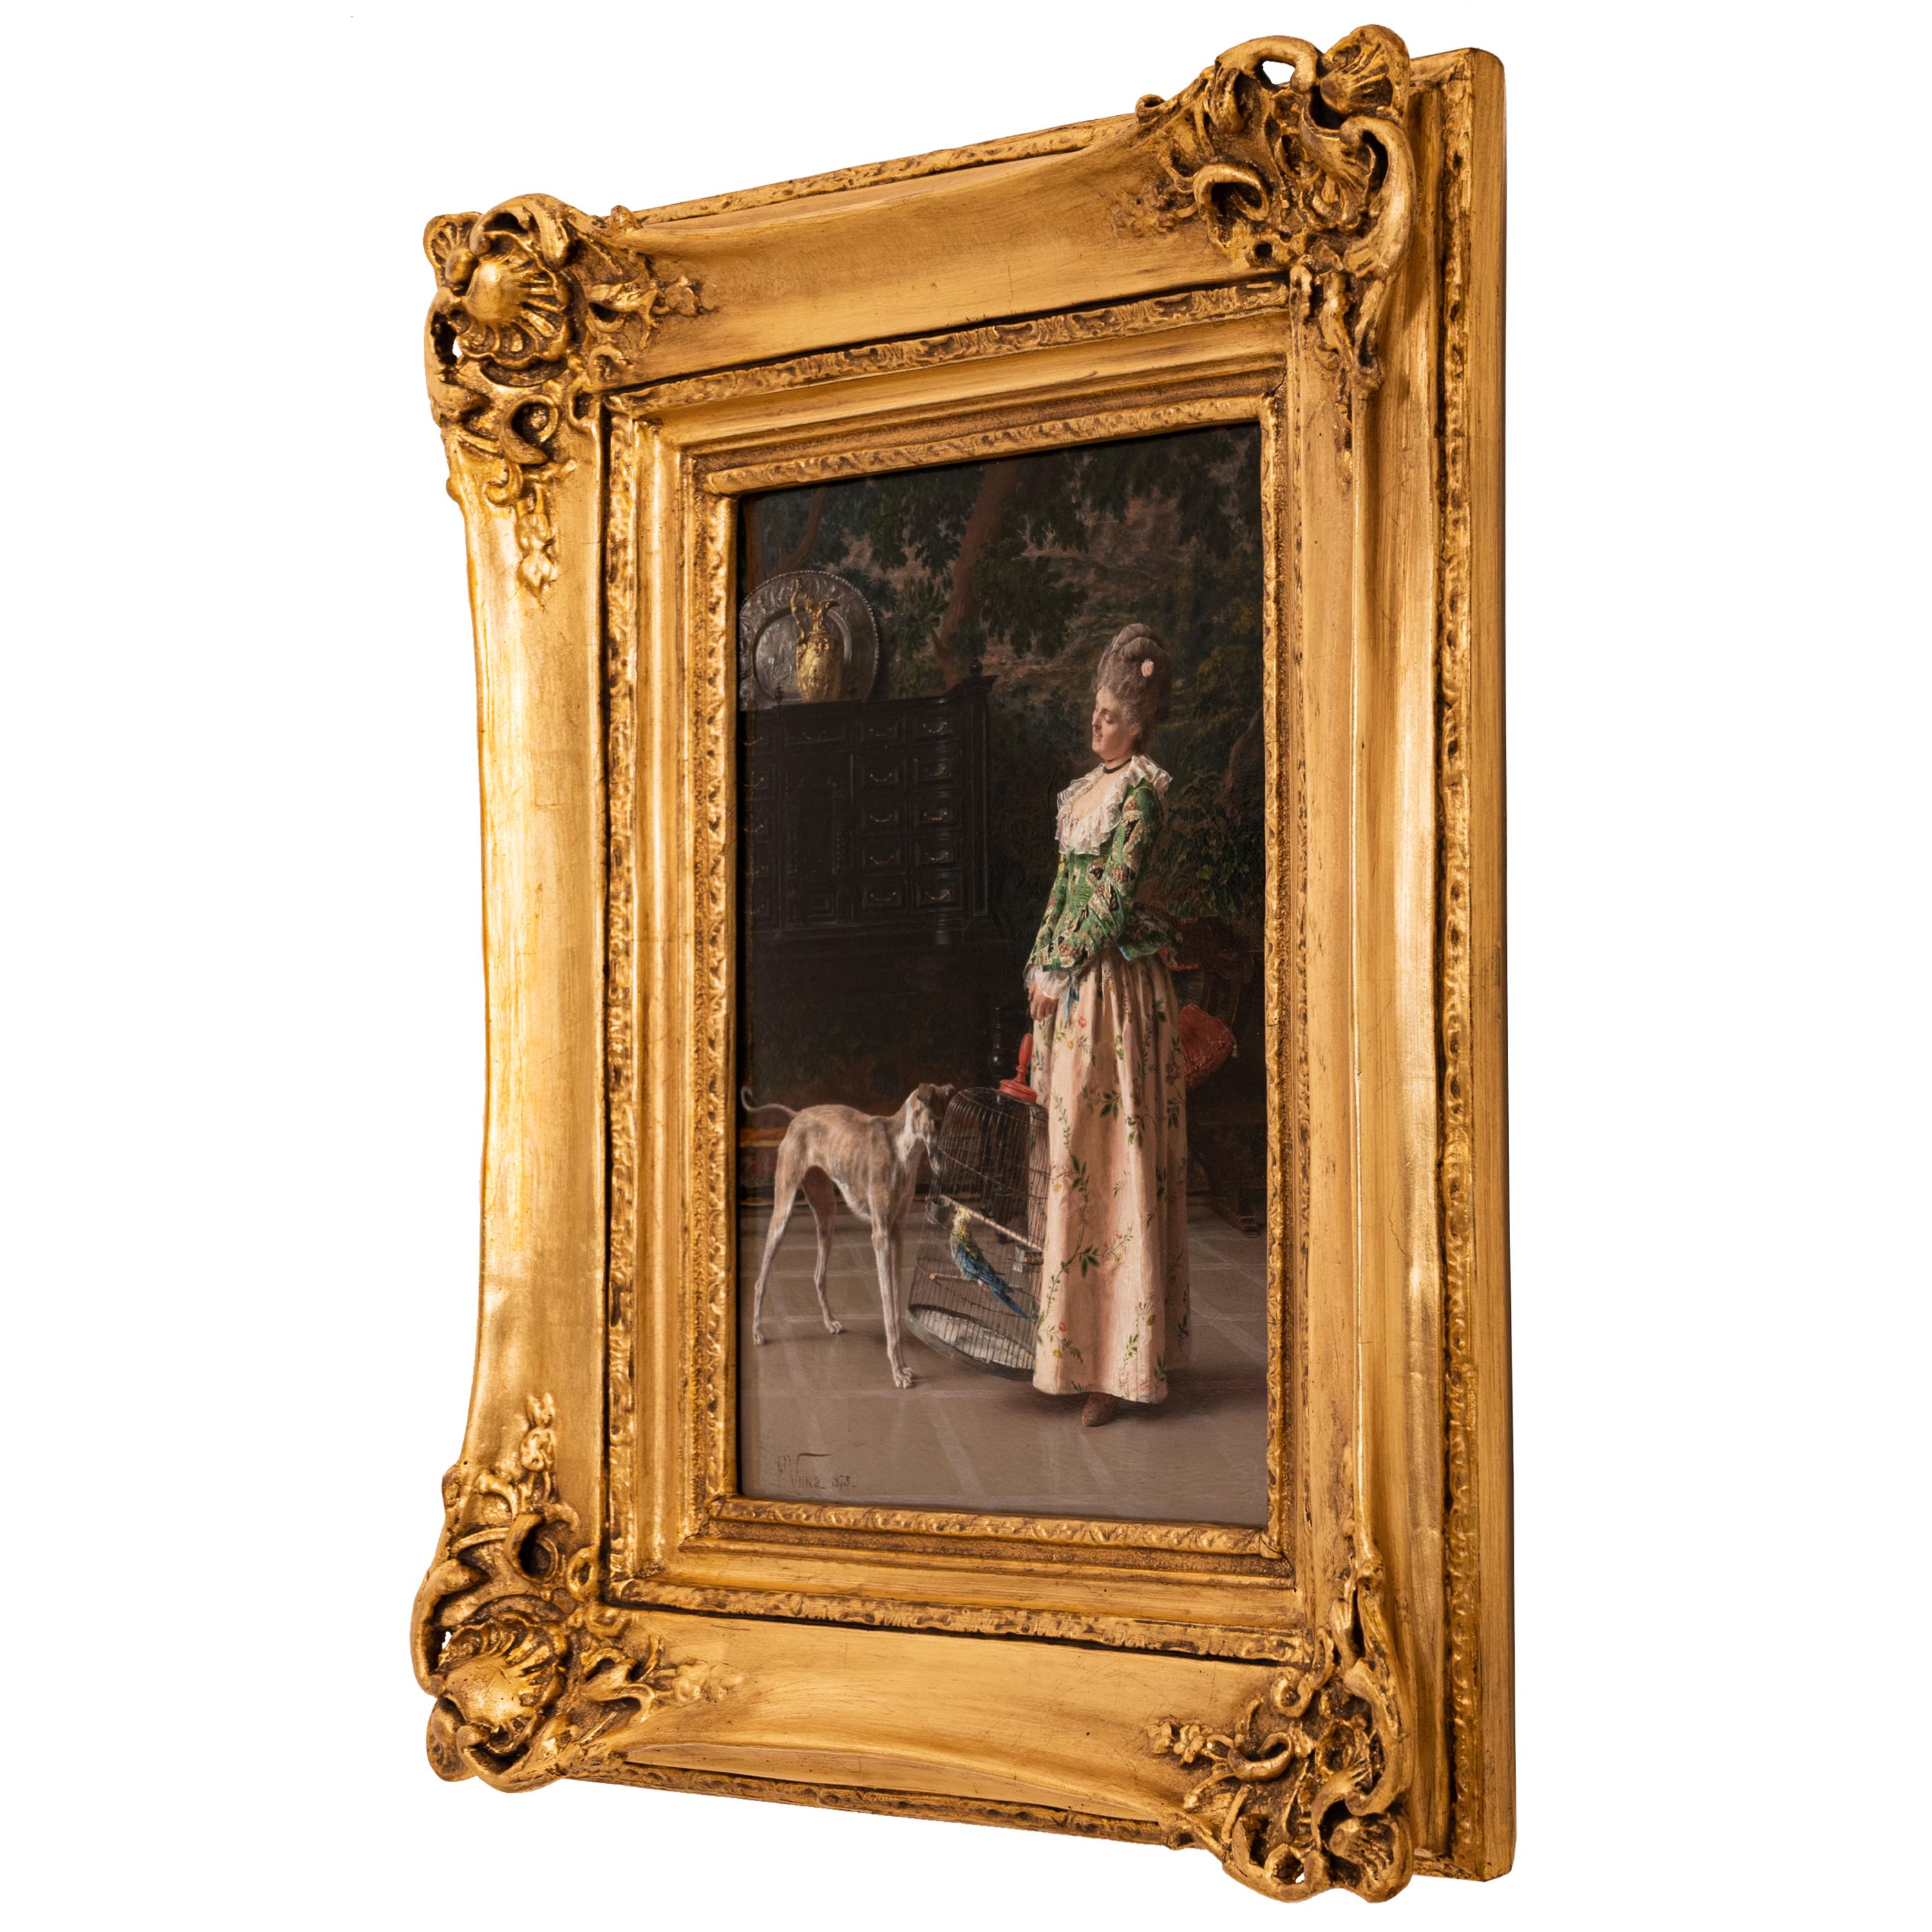 Une très bonne huile ancienne sur panneau, peinture de genre de costume par le célèbre artiste du nord de l'Italie, Francesco Vinea (1845-1902), le tableau est signé et daté 1873.
Vinea a étudié à l'Académie des Beaux-Arts de Florence et a ensuite